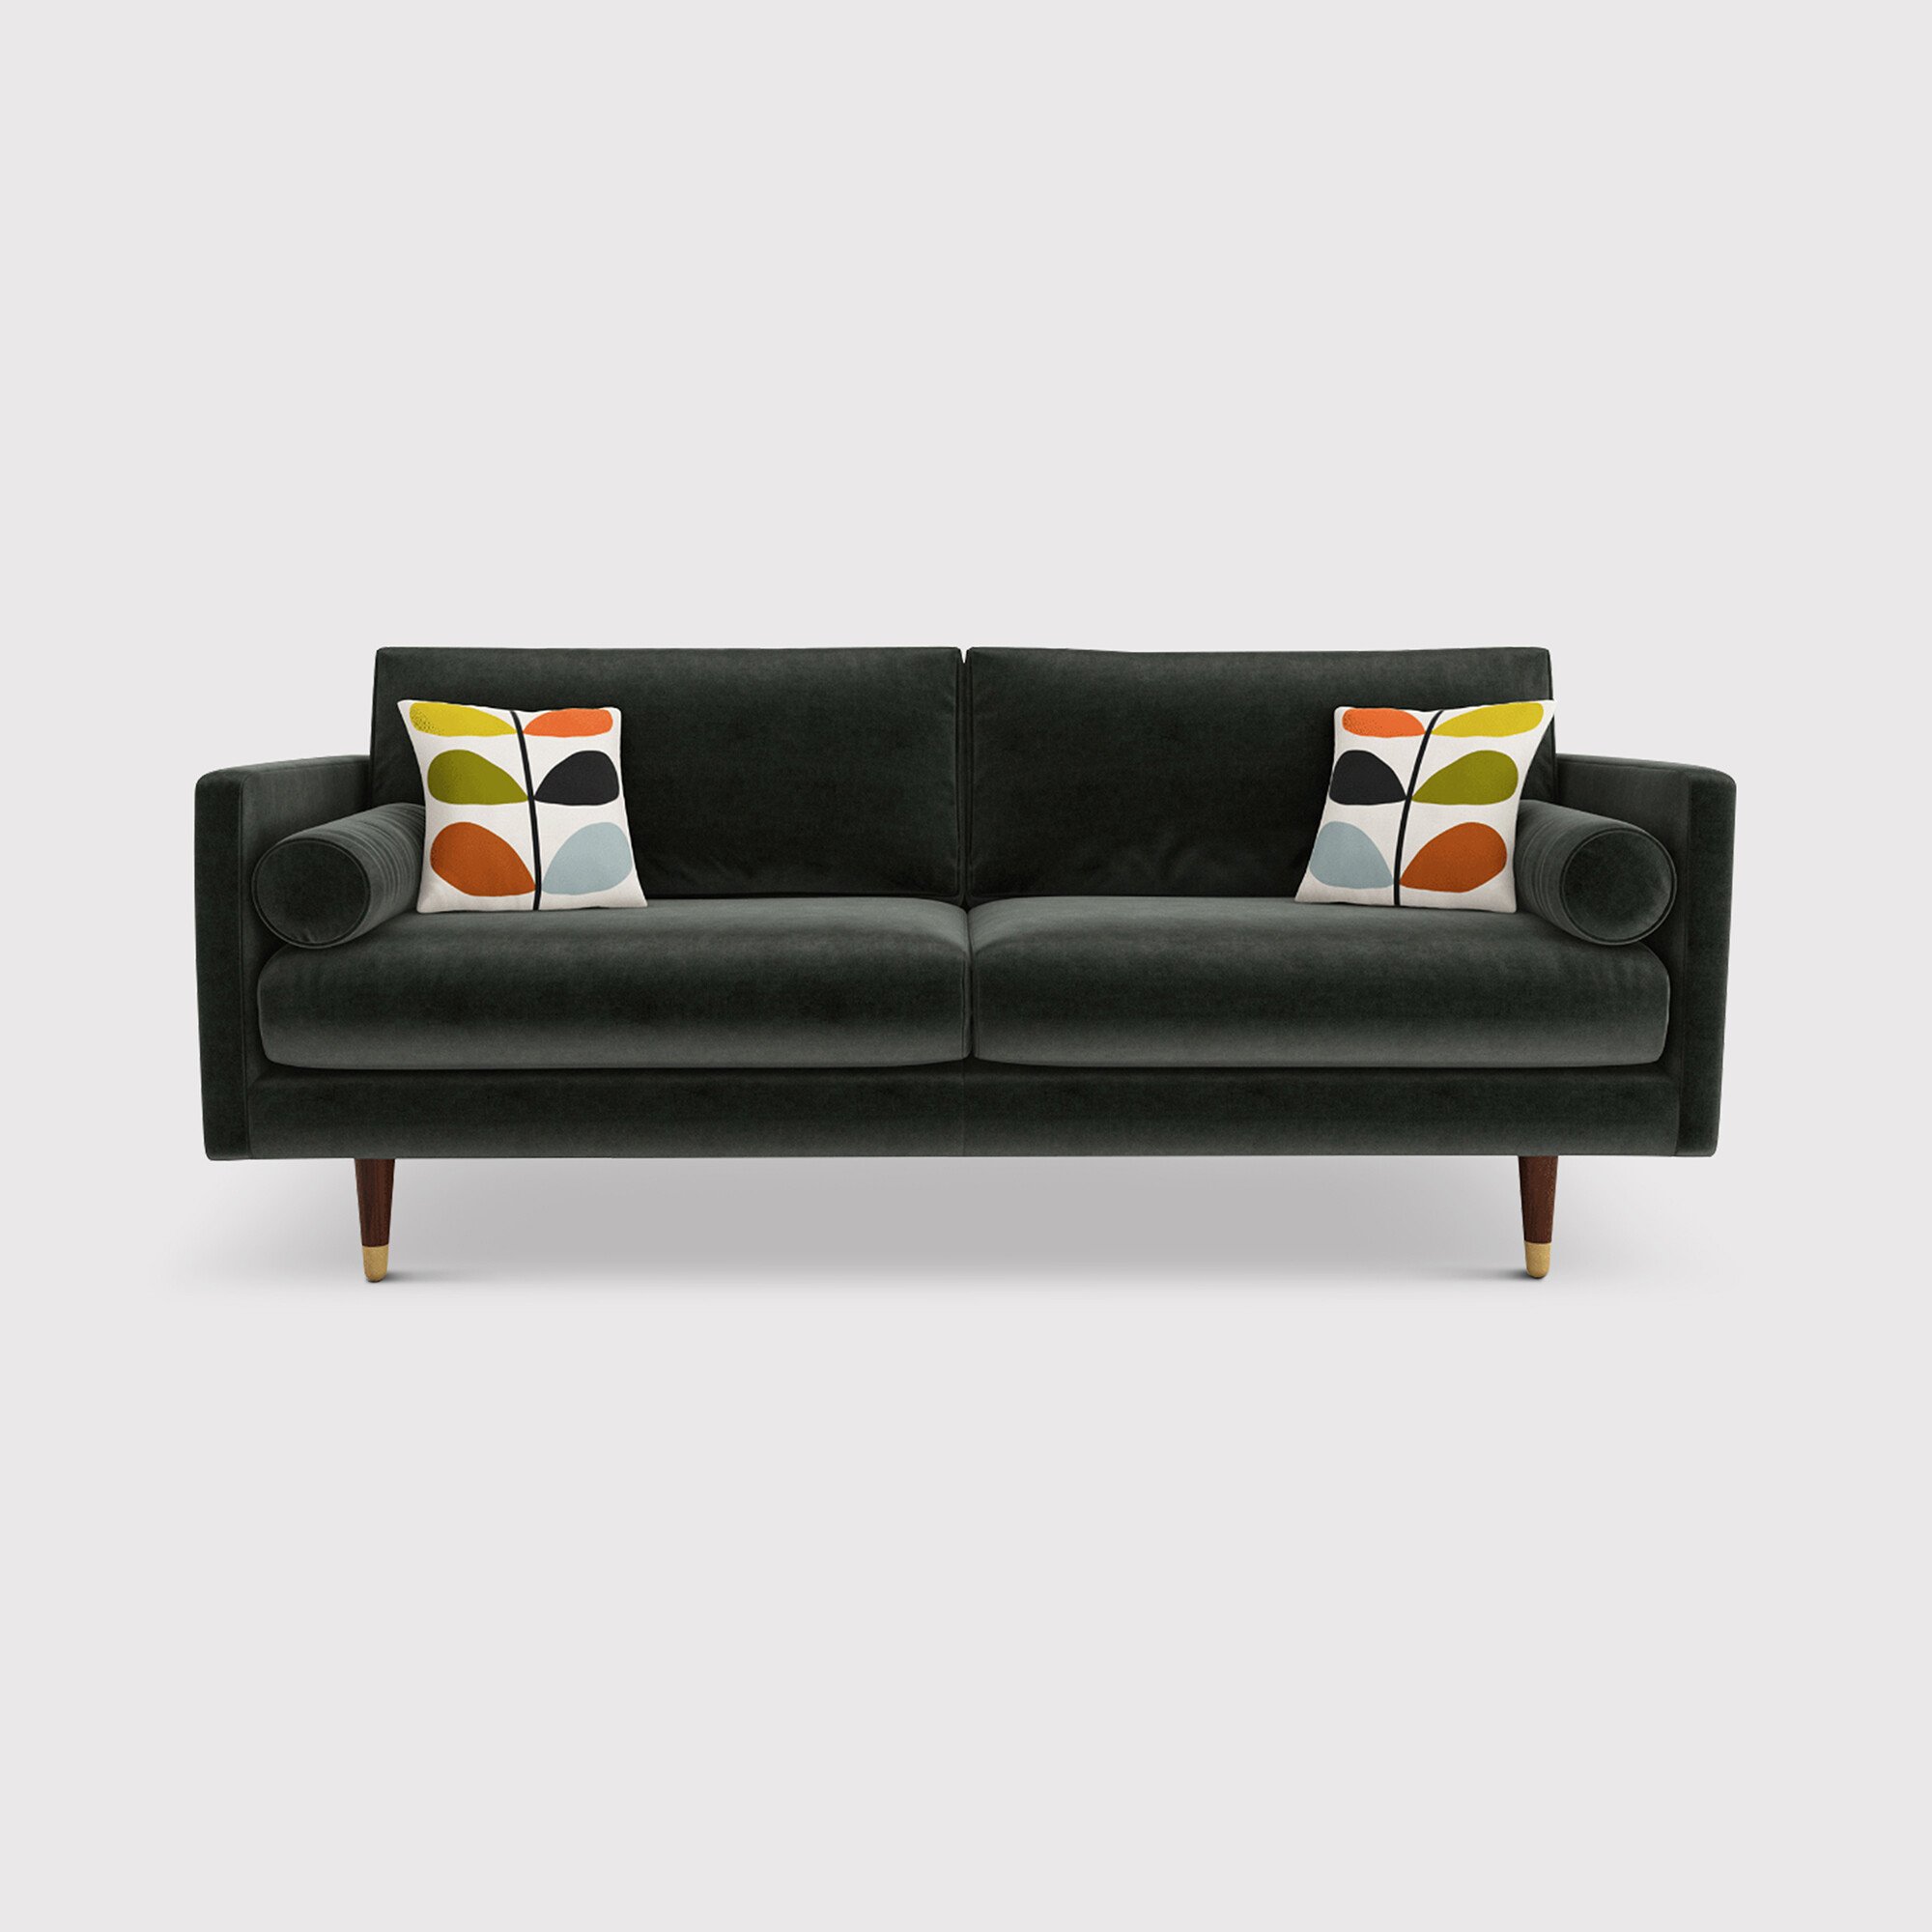 Orla Kiely Mimosa Large Sofa, Grey Fabric | Barker & Stonehouse